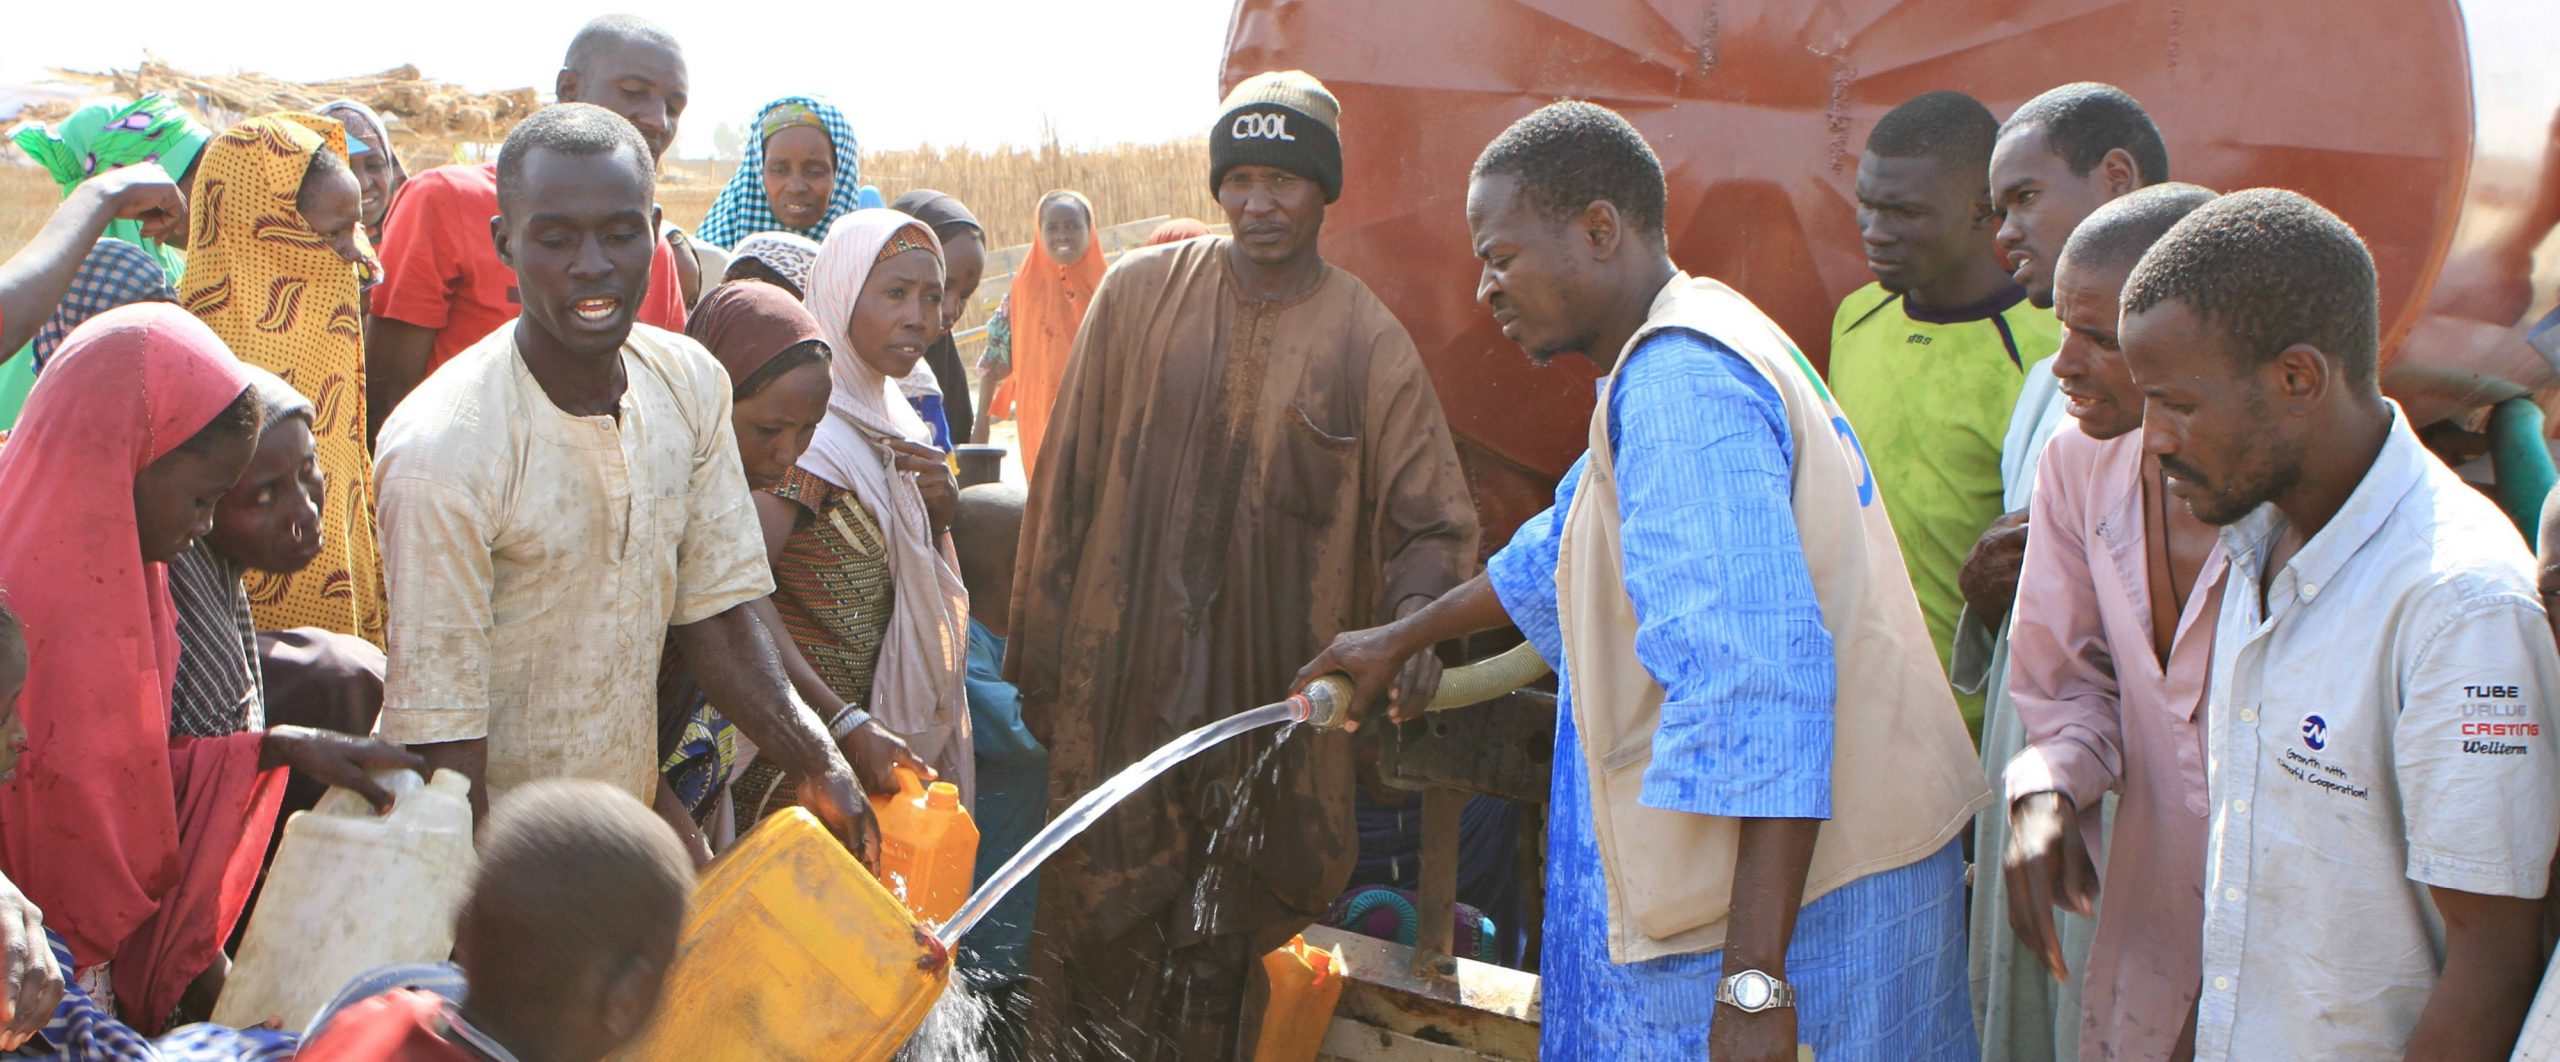 Nigeria_Water_trucking_in_Monguno_ActionagainstHunger